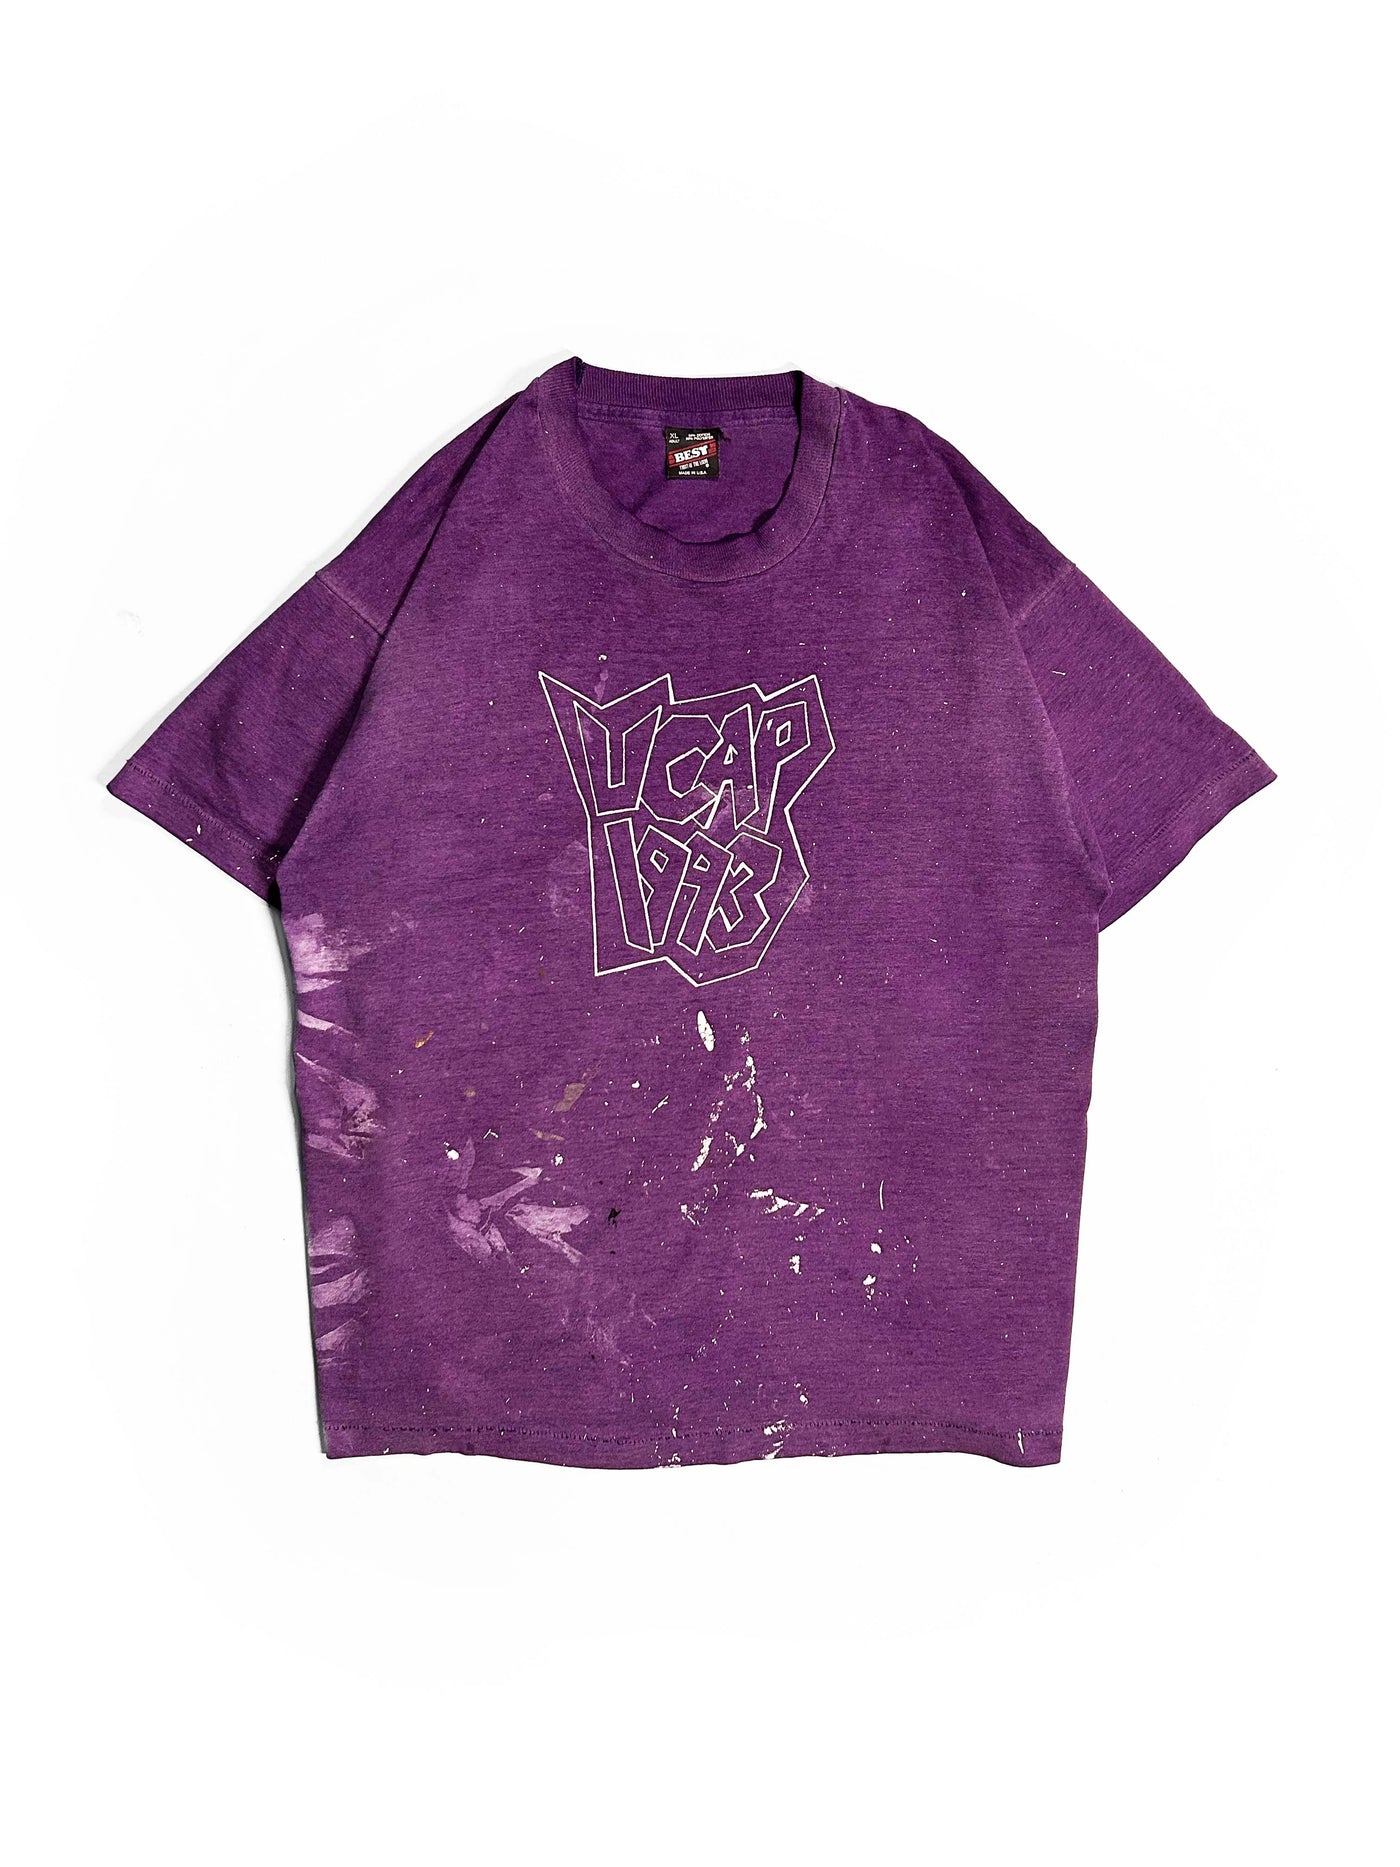 Vintage 1993 UCAP Paint Splattered T-Shirt